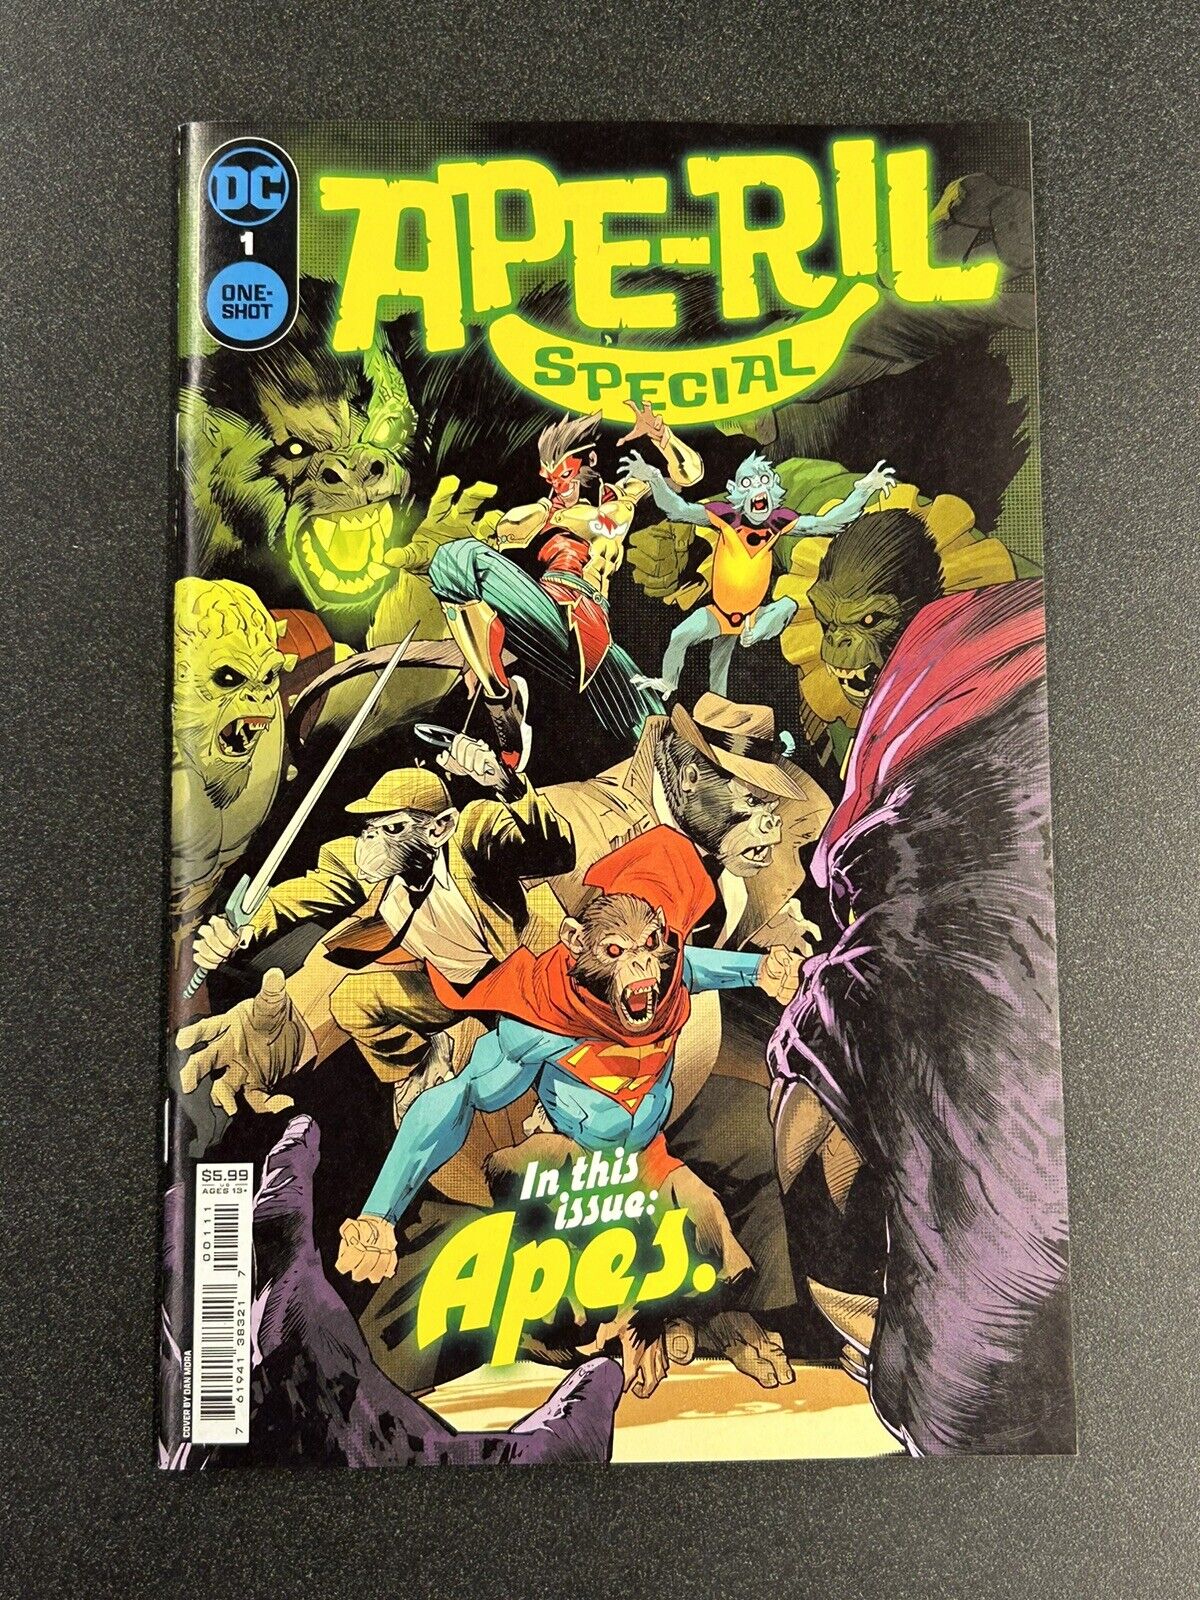 Ape-ril Special #1 (CVR A) (DC Comics) TC11